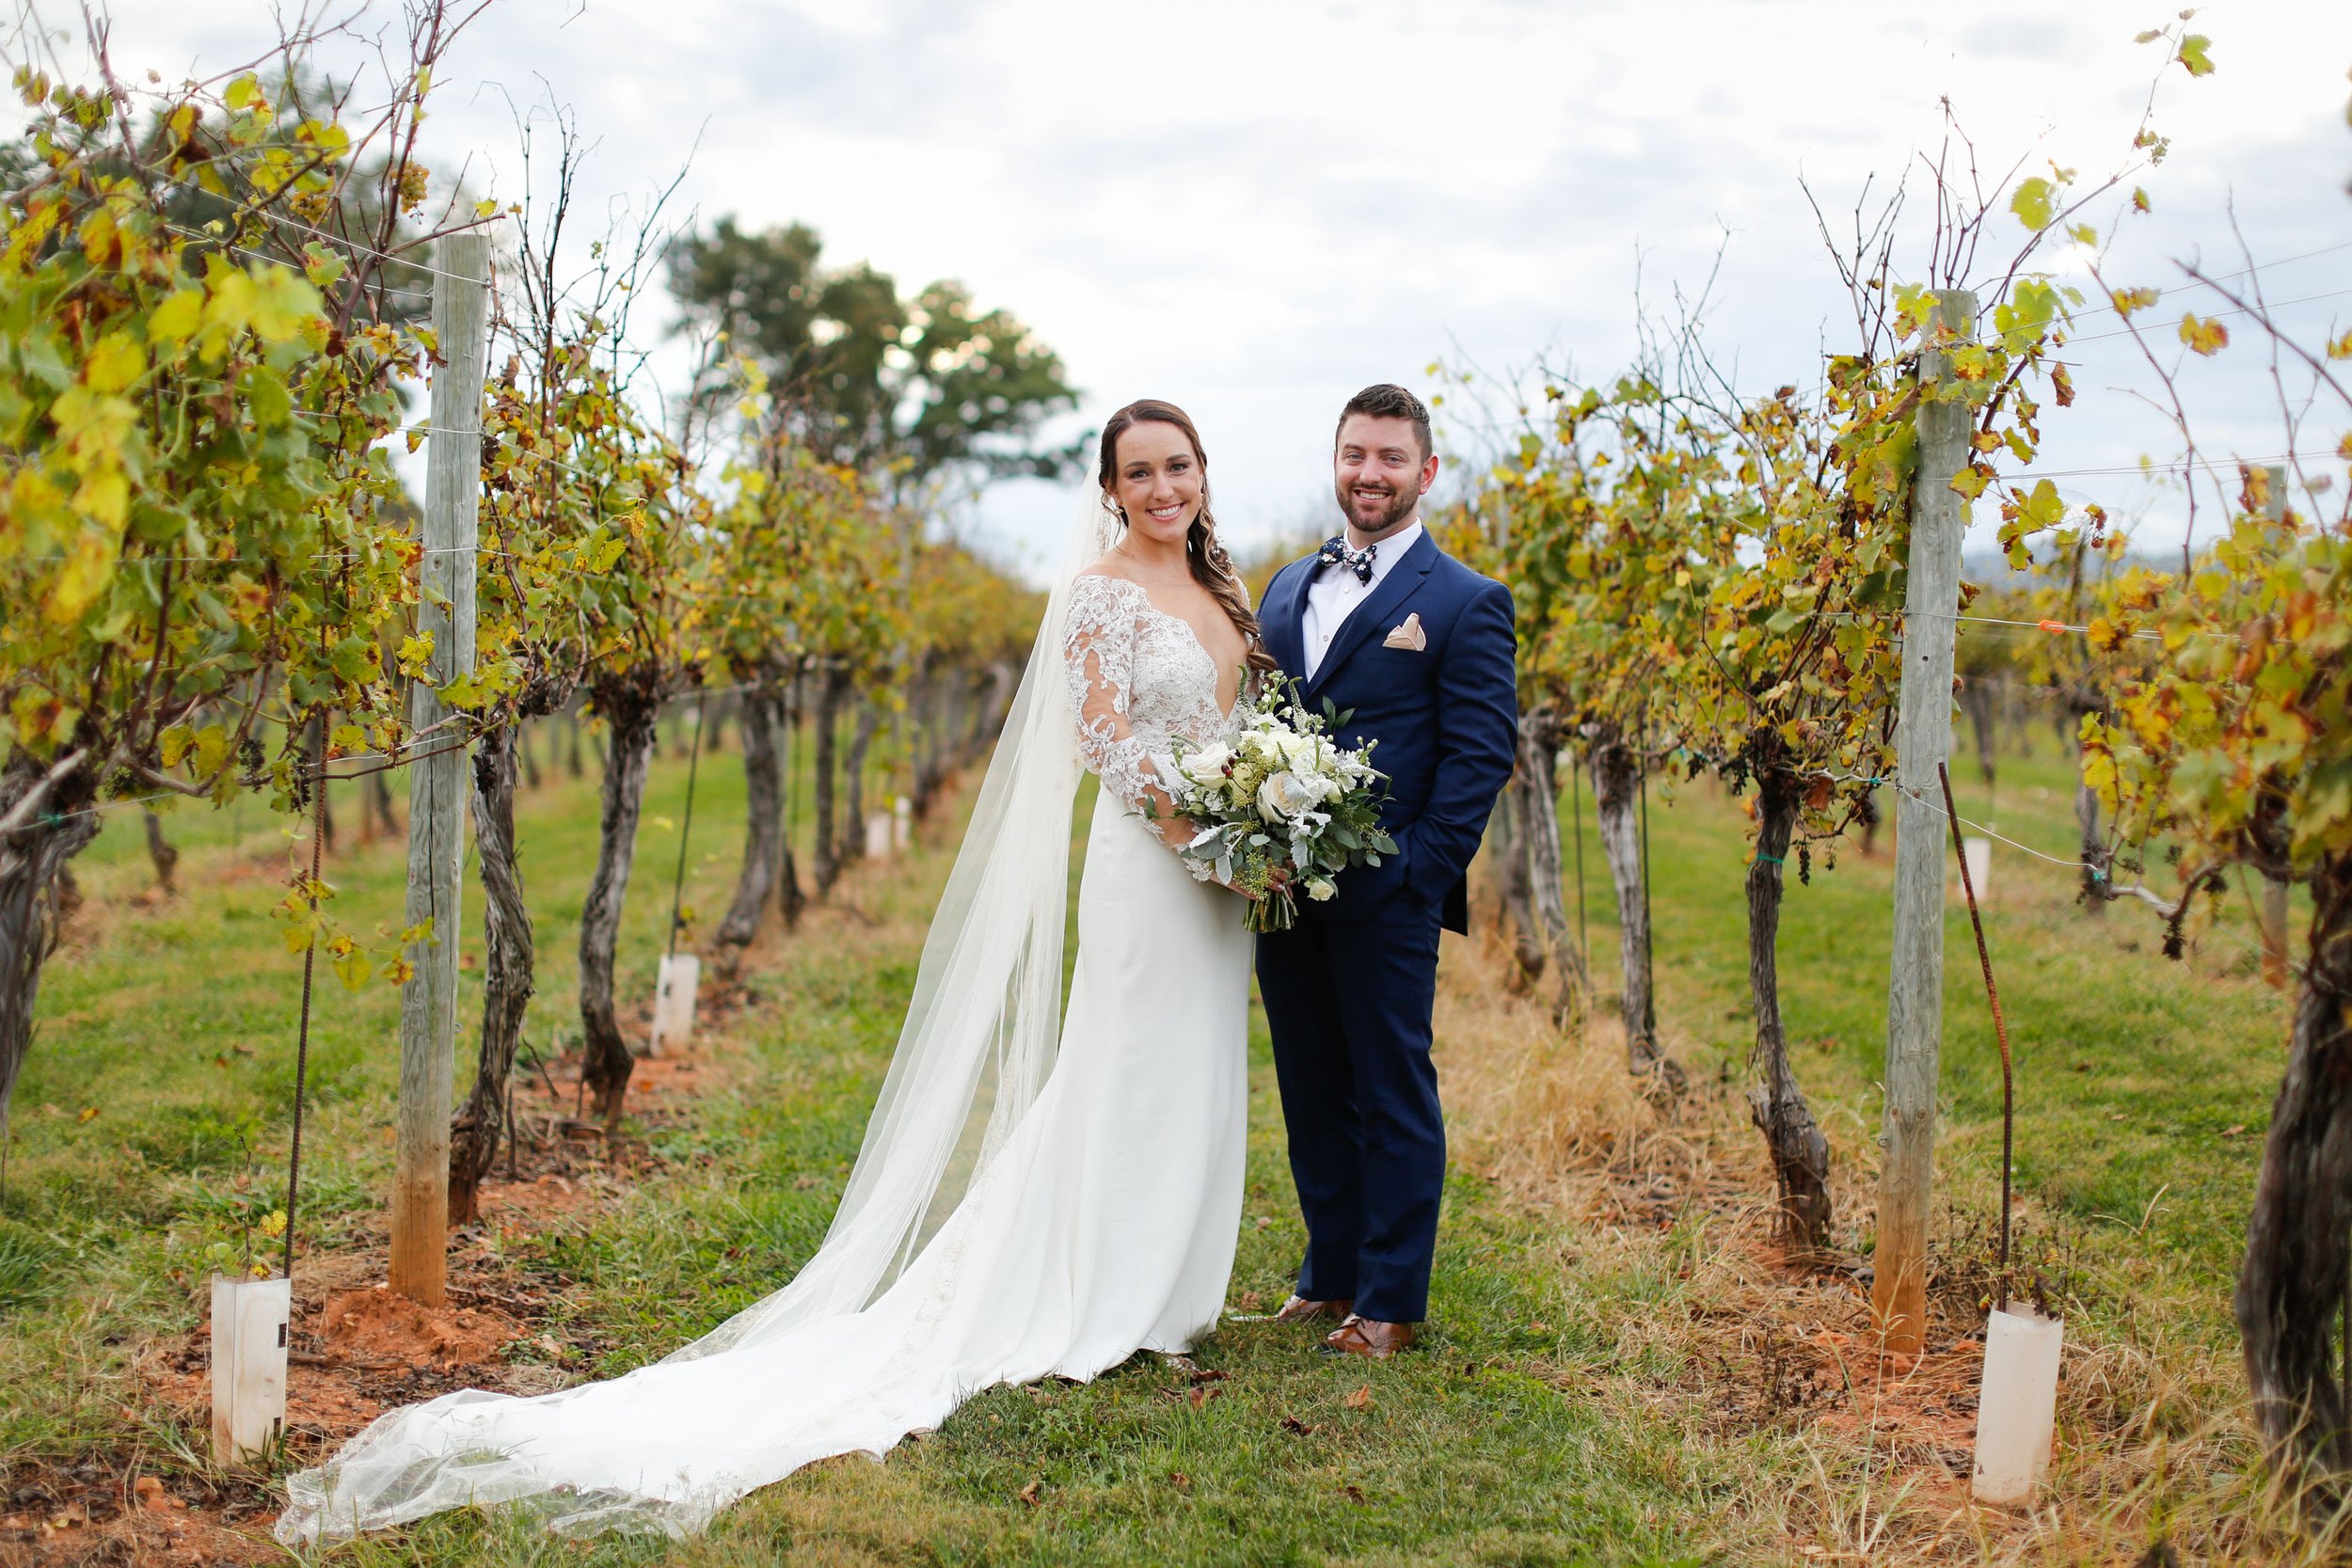  10/22/21 - Charlottesville, VA - Jill and Charles Cahoon Wedding at Keswick Vineyards.Photo credit: Amanda Maglione Photography 